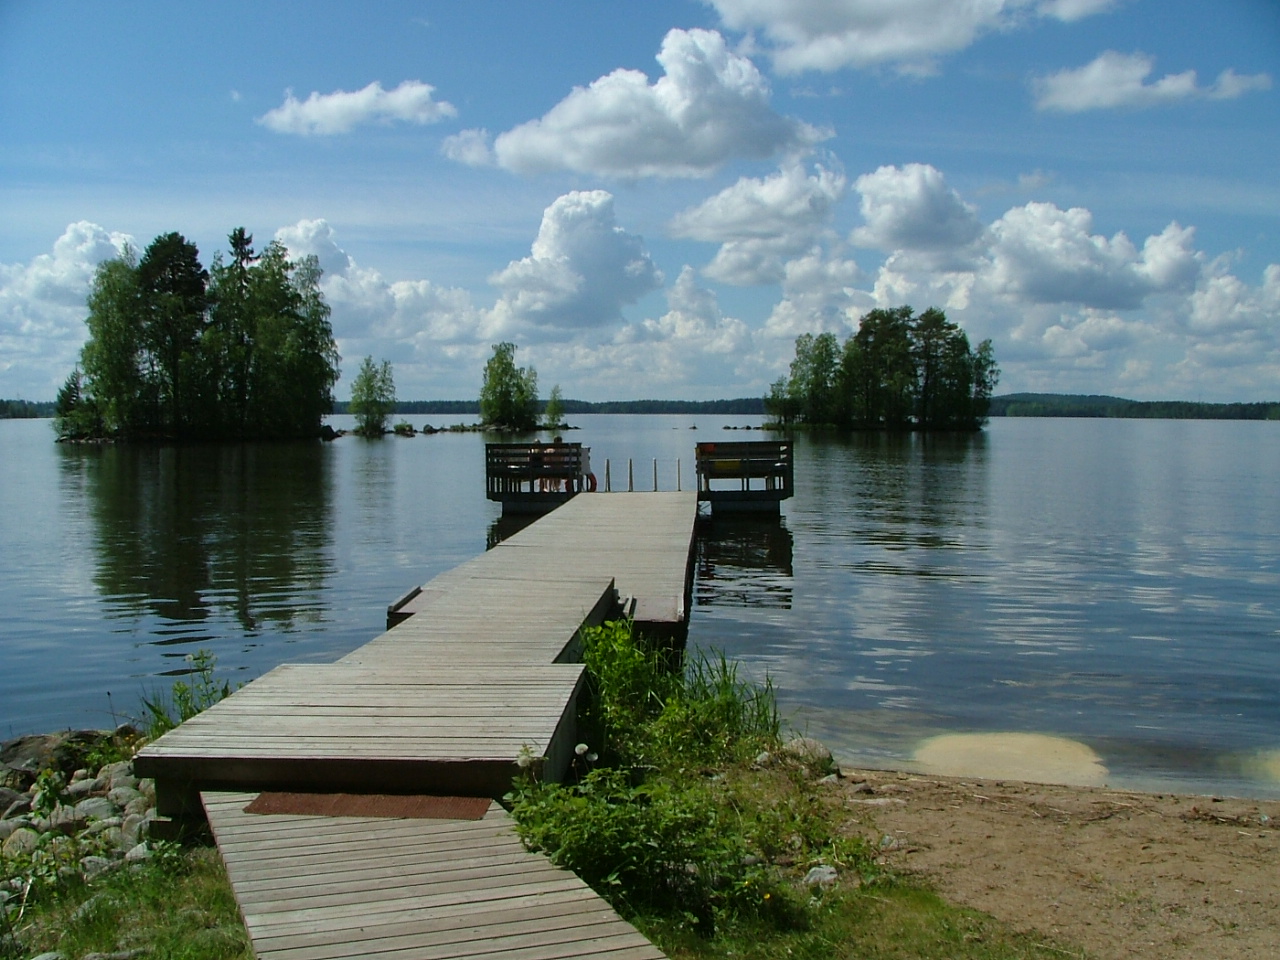 Kuvassa on pitkä laituri ja näkymä järvelle päin. Laiturin päässä olevalla penkillä istuu kaksi uimaria. Järvessä näkyy kaksi pientä saarta. Ilma on aurinkoinen. Taivaalla muutamia kumpupilviä.